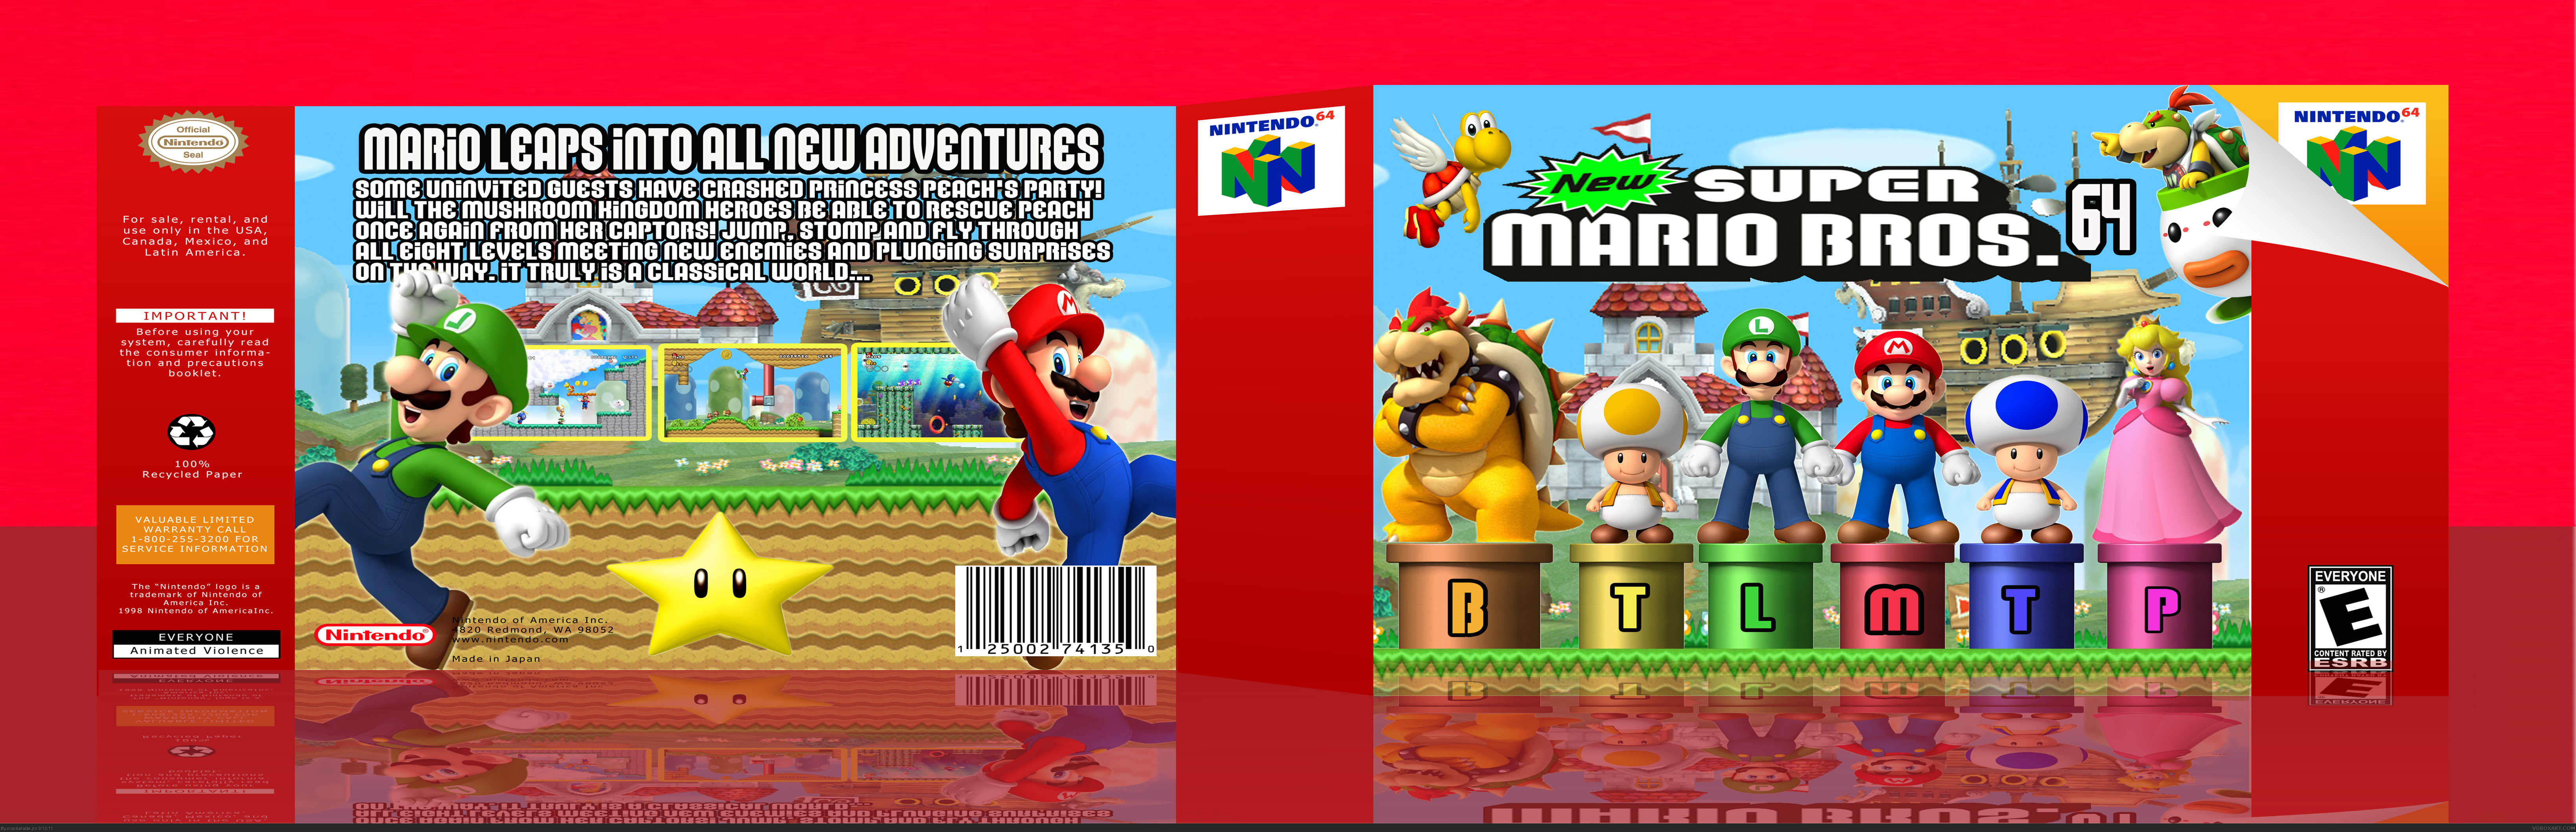 New Super Mario Bros 64 box cover